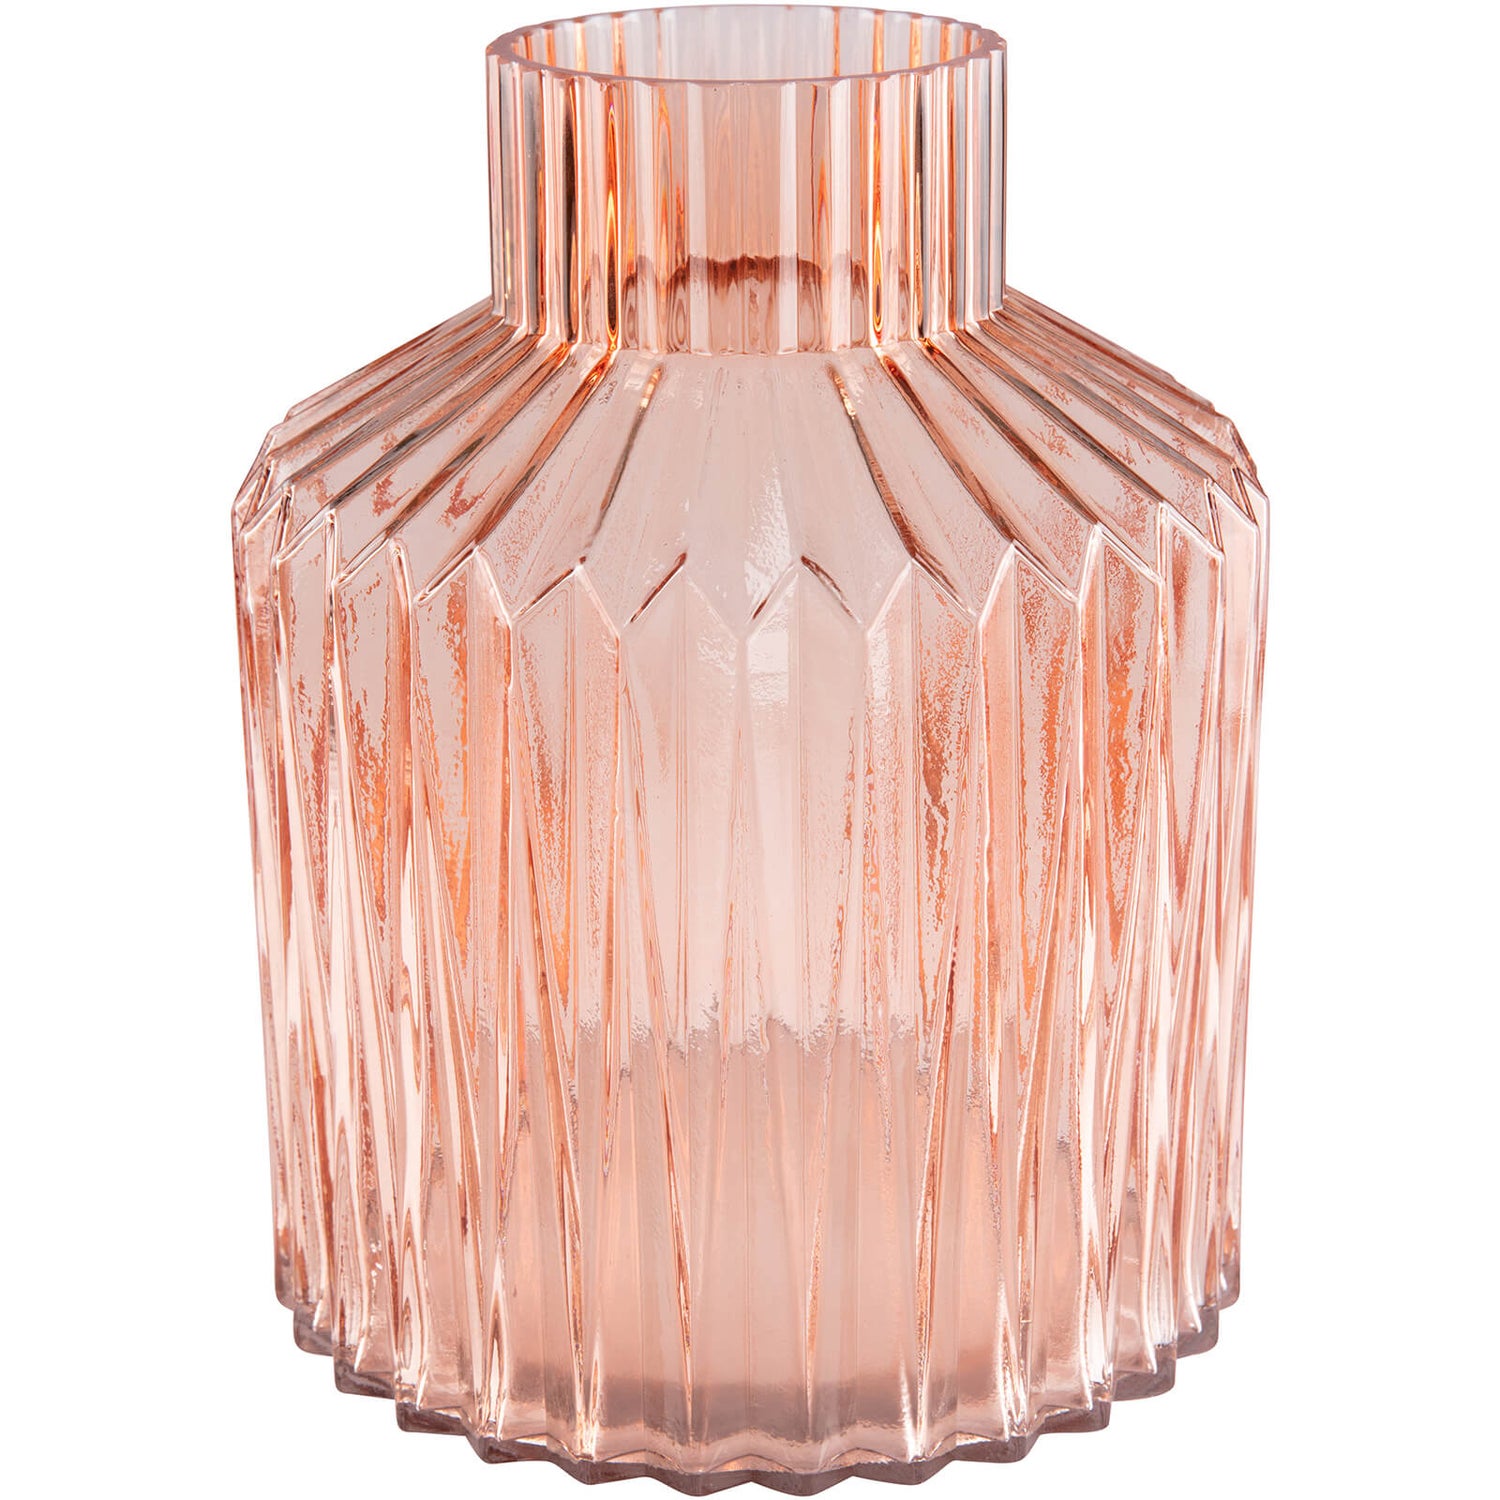 Day Birger et Mikkelsen Home Glass Vase - Tea Rose - Small